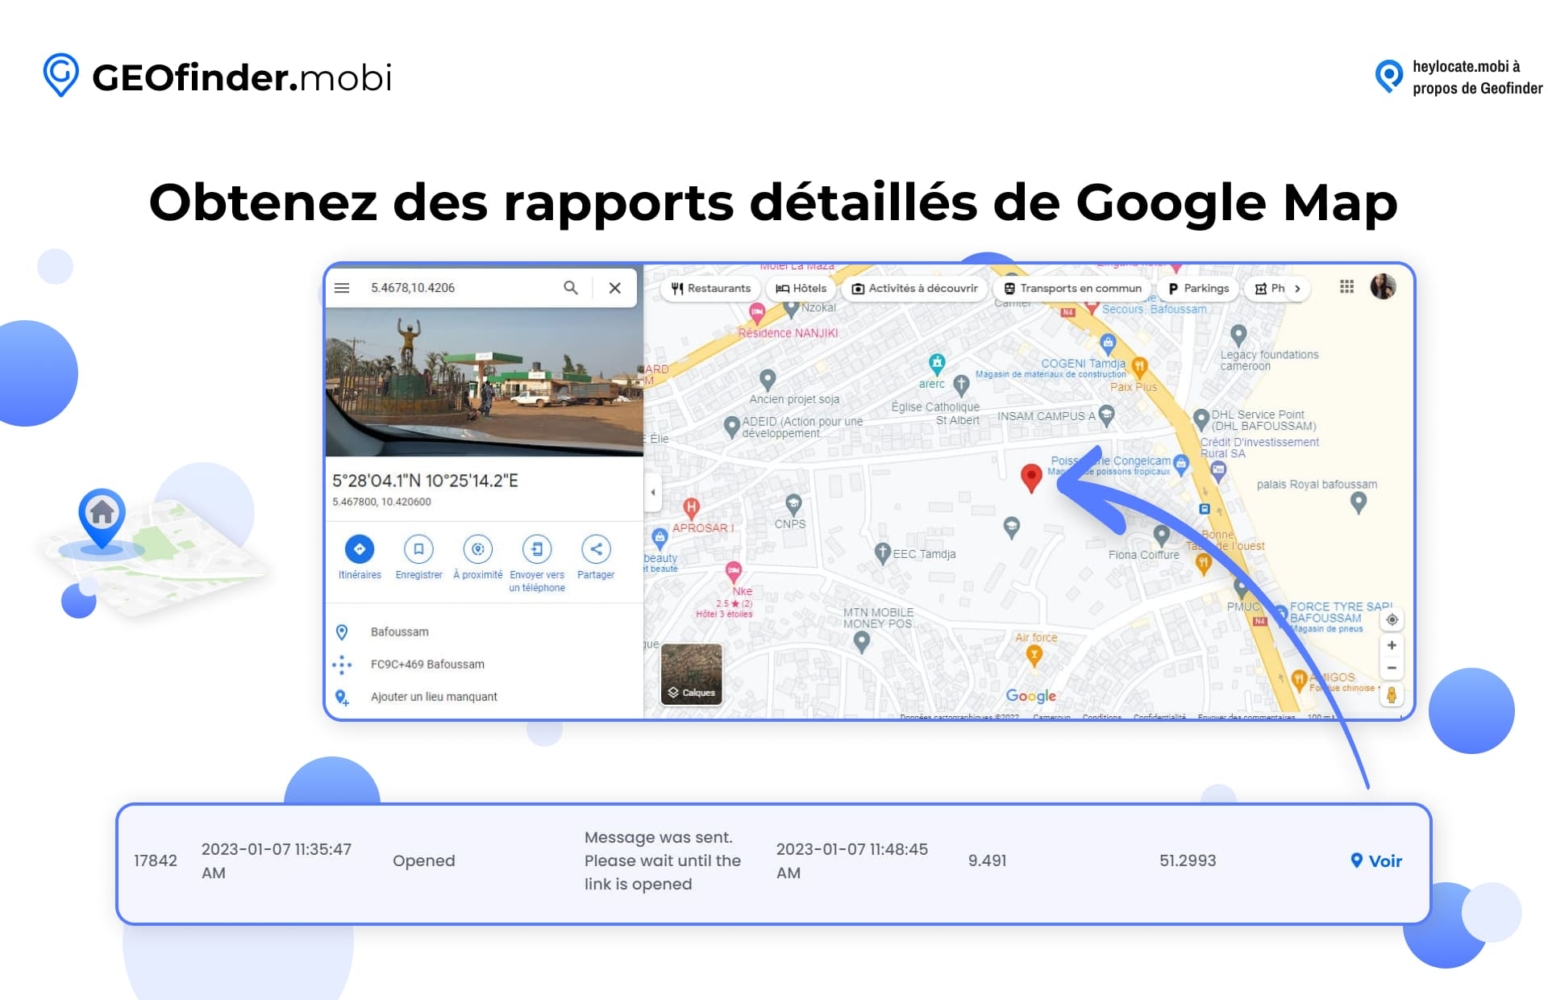 Affichage de la fonction de GEOfinder.mobi permettant d'obtenir des rapports détaillés à partir de Google Maps, montrant une carte et les coordonnées d'un lieu, ainsi qu'une vue détaillée d'une carte mettant en évidence une zone spécifique avec un marqueur de lieu.